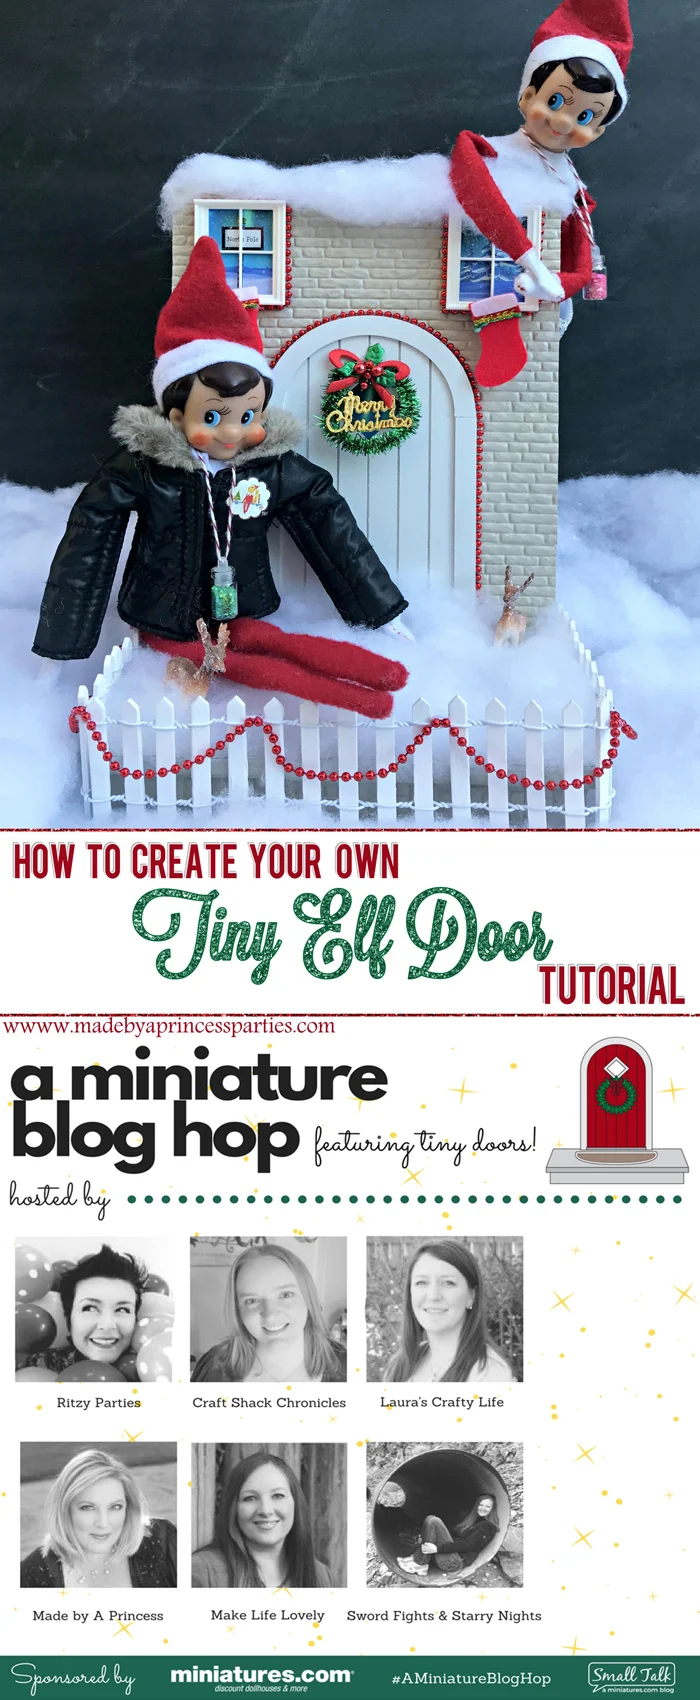 How to Create Your Own Tiny Elf Door Tutorial Elf on the Shelf Blog Hop MadebyaPrincess #elfdoor #fairydoor #elfdoorkit